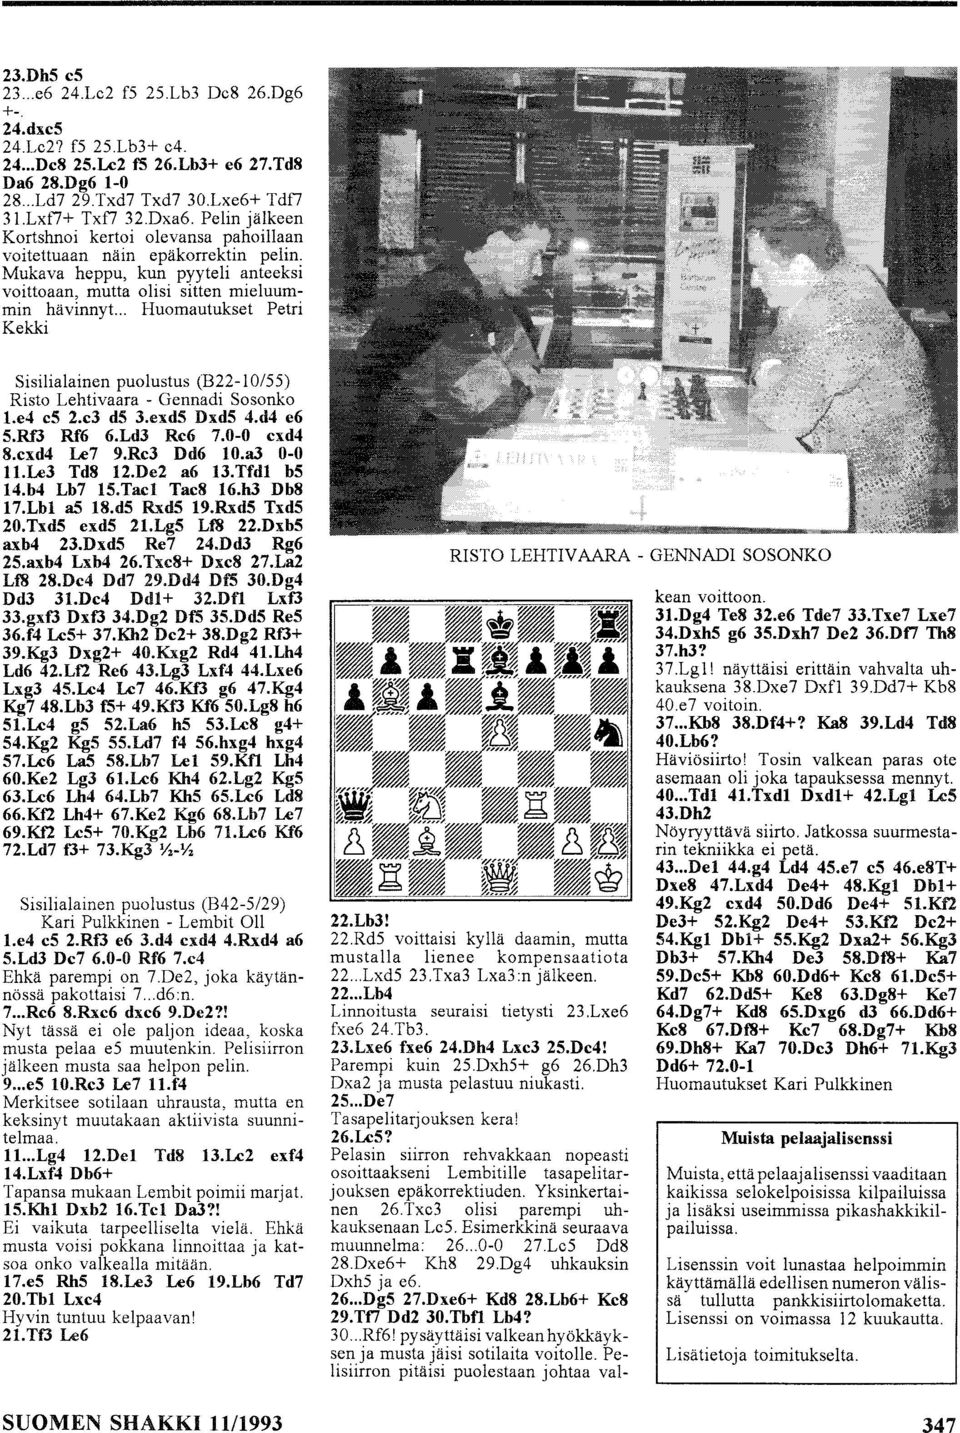 .. Huomautukset Petri Kekki Sisilialainen puolustus (B22-0/55) Risto Lehtivaara - Gennadi Sosonko l.e4 cs 2.c3 ds 3.exdS DxdS 4.d4 e6 S.Rf3 Rf6 6.Ld3 Re6 7.0-0 exd4 8.exd4 Le7 9.Re3 Dd6 0.a3 0-0 l.